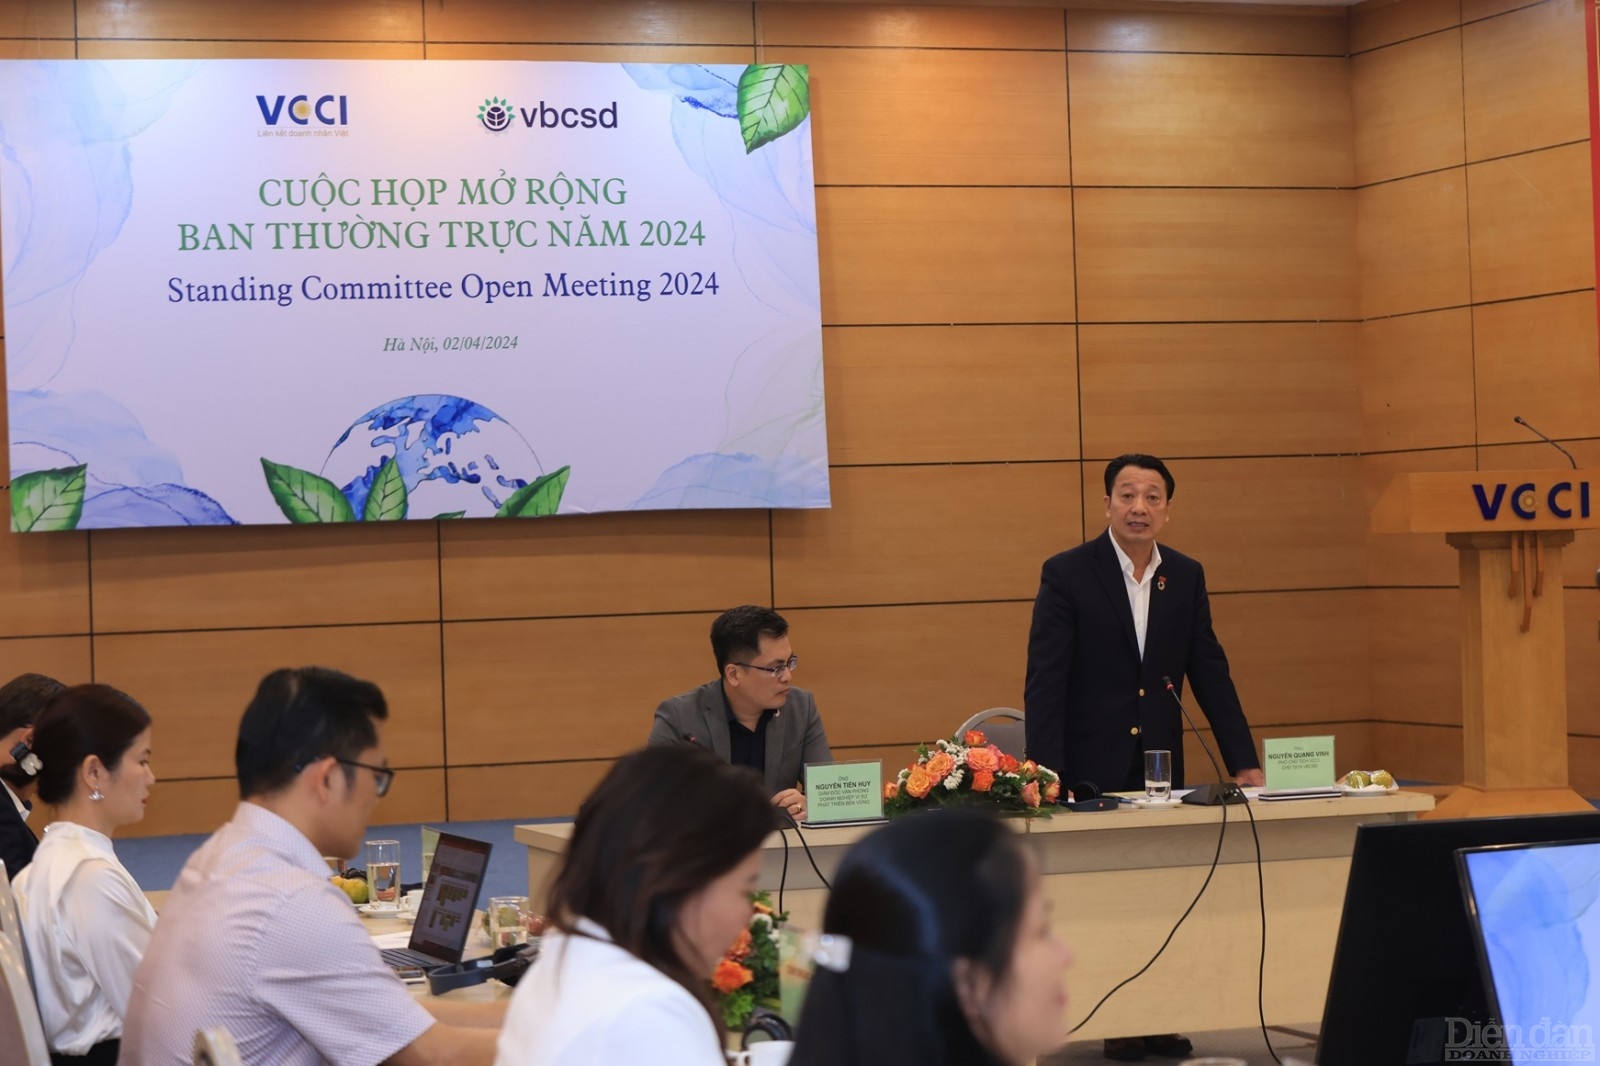 Phó Chủ tịch VCCI Nguyễn Quang Vinh phát biểu tại buổi họp